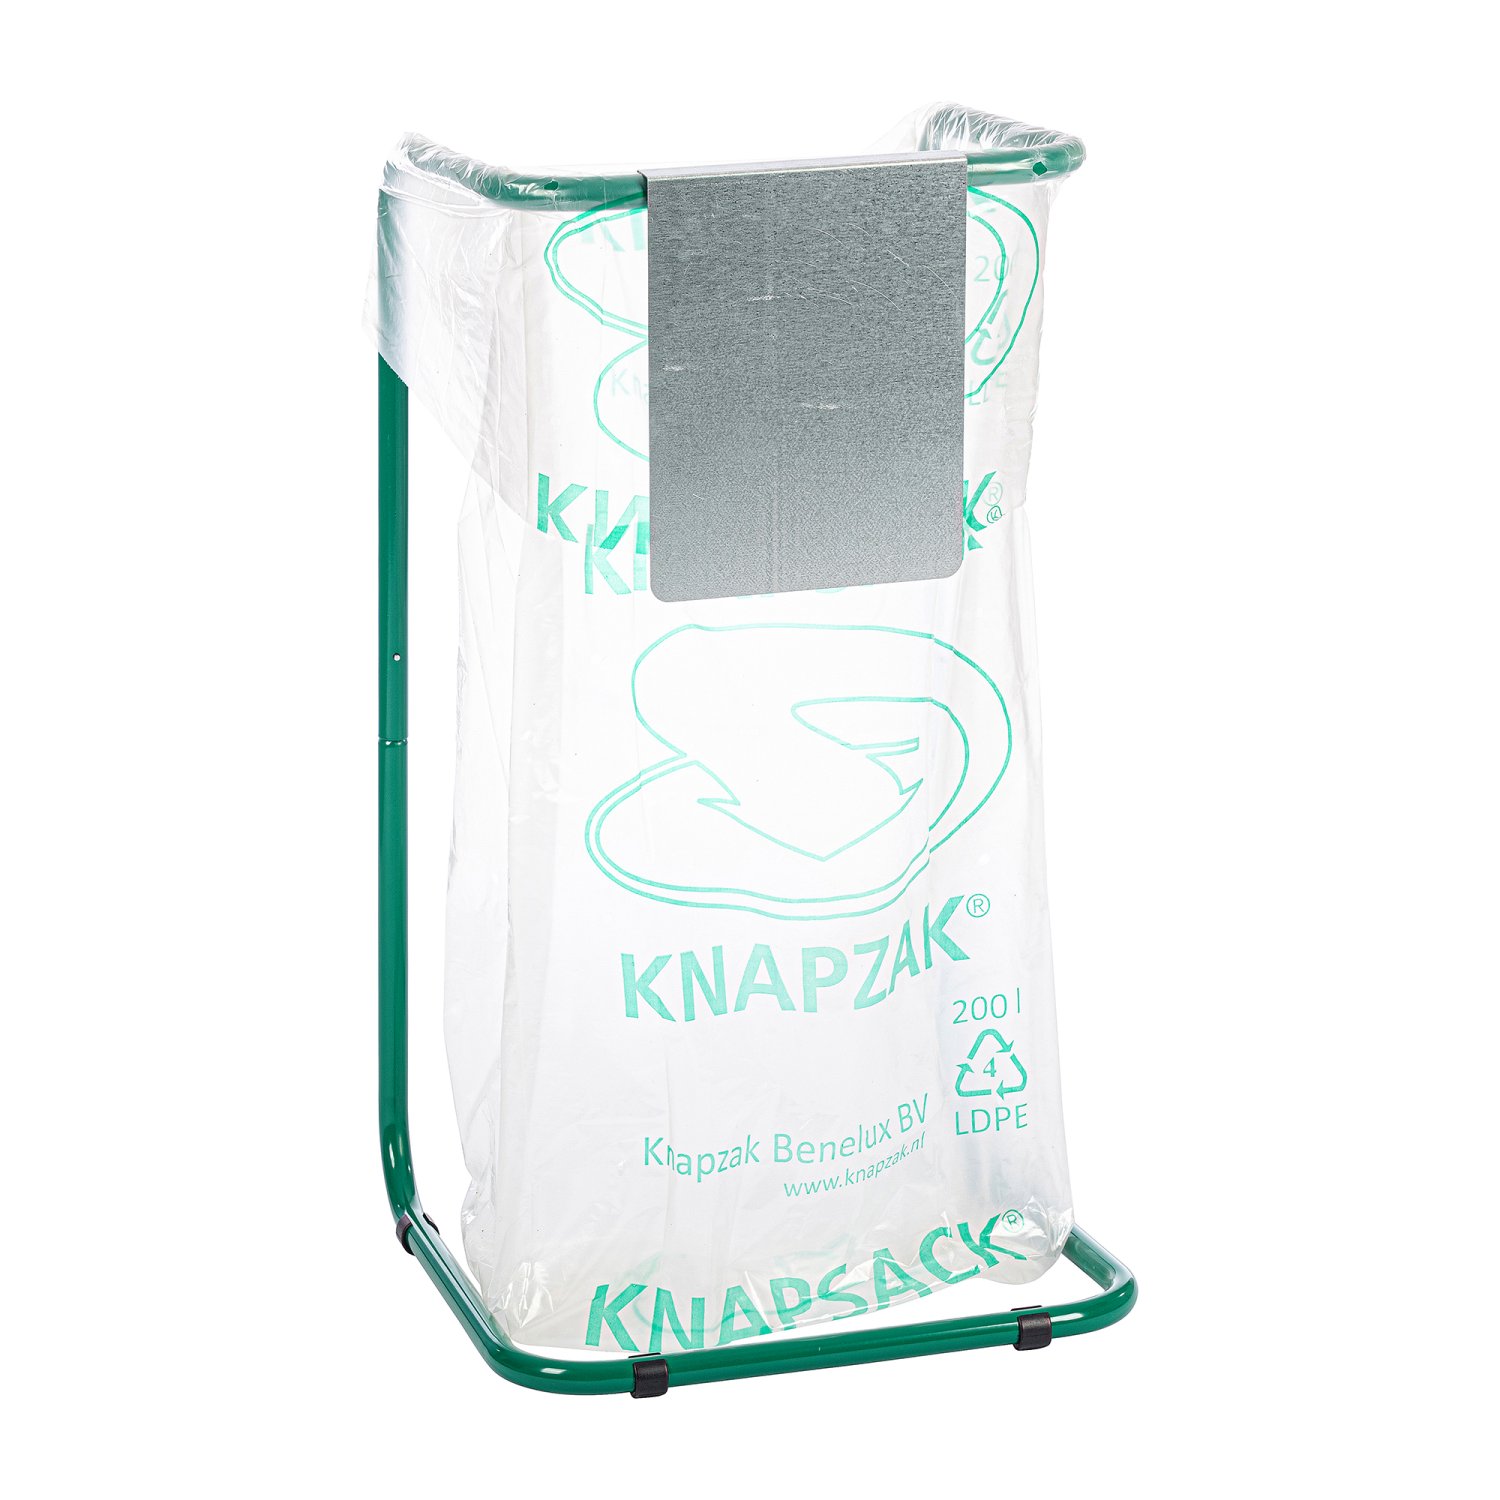 KIP3-4-10ZV Plaque d'information Que doit on jeter dans le système Knapsack ? Vous pouvez l’indiquer par moyen d’une plaque d’information. Ces plaques d’information sont disponibles pour les supports de Knapsack 60 à 2500 litres.